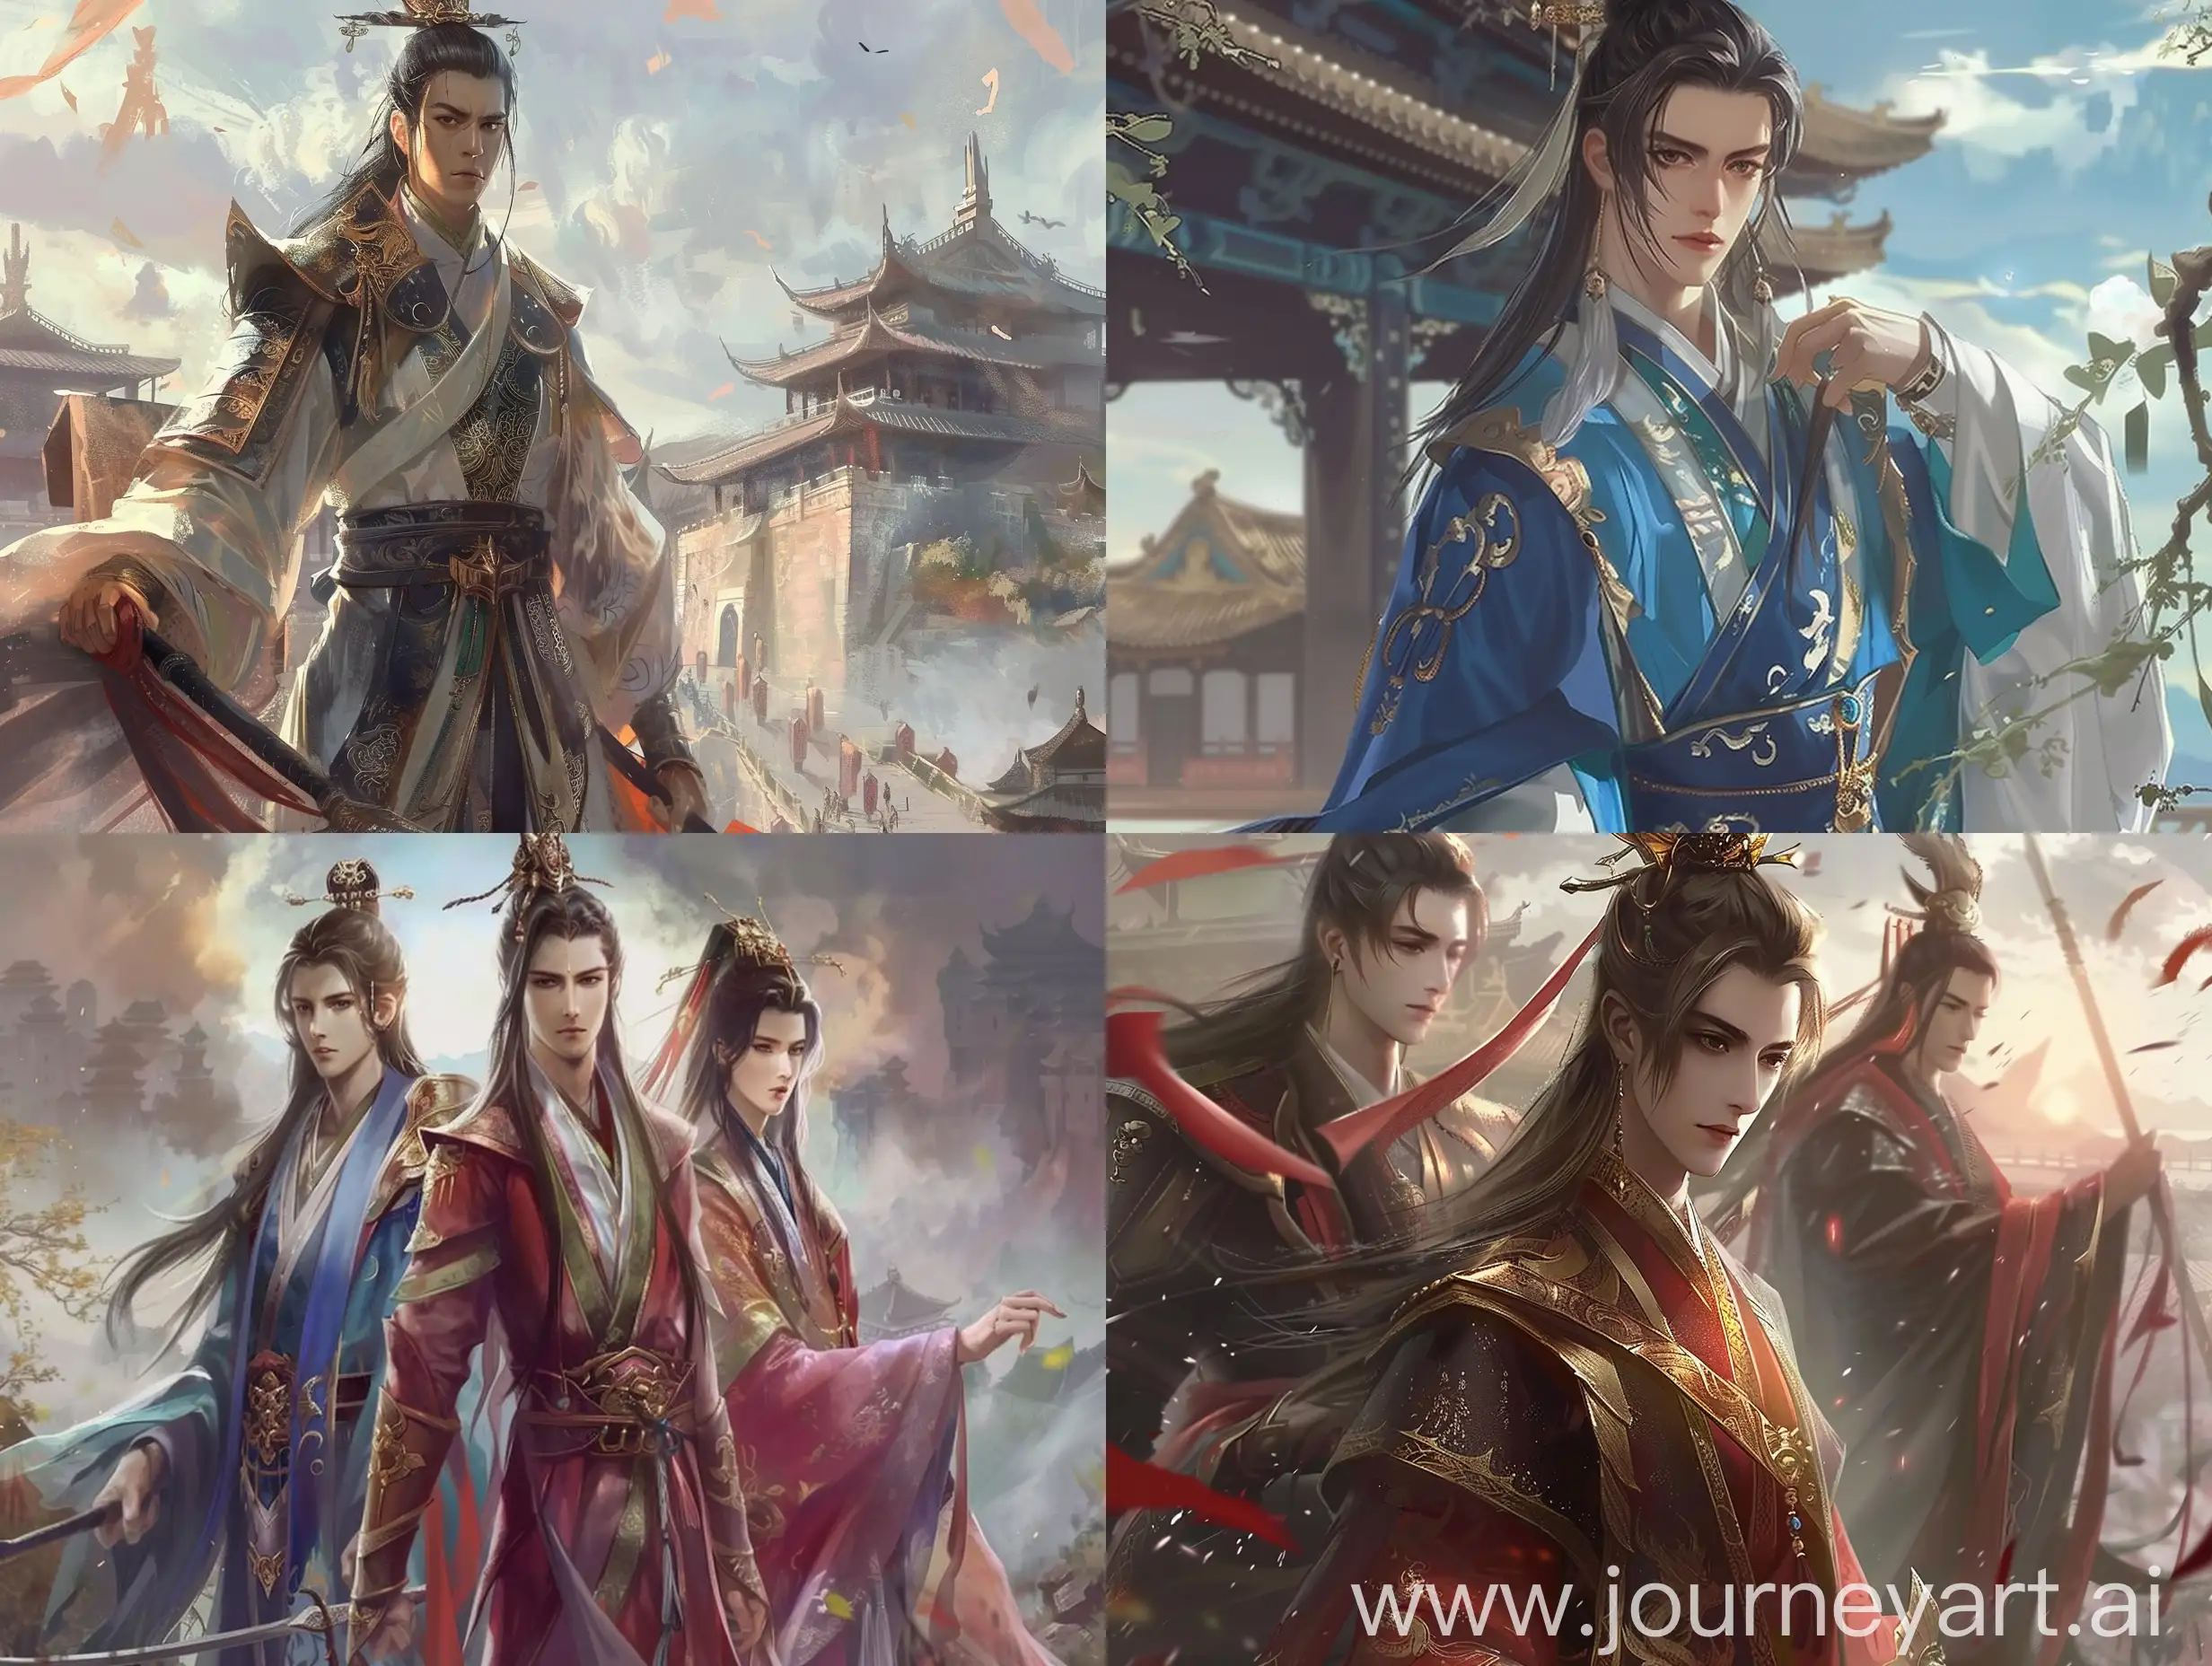 Kunling-Palace-Xianxia-Fantasy-Tale